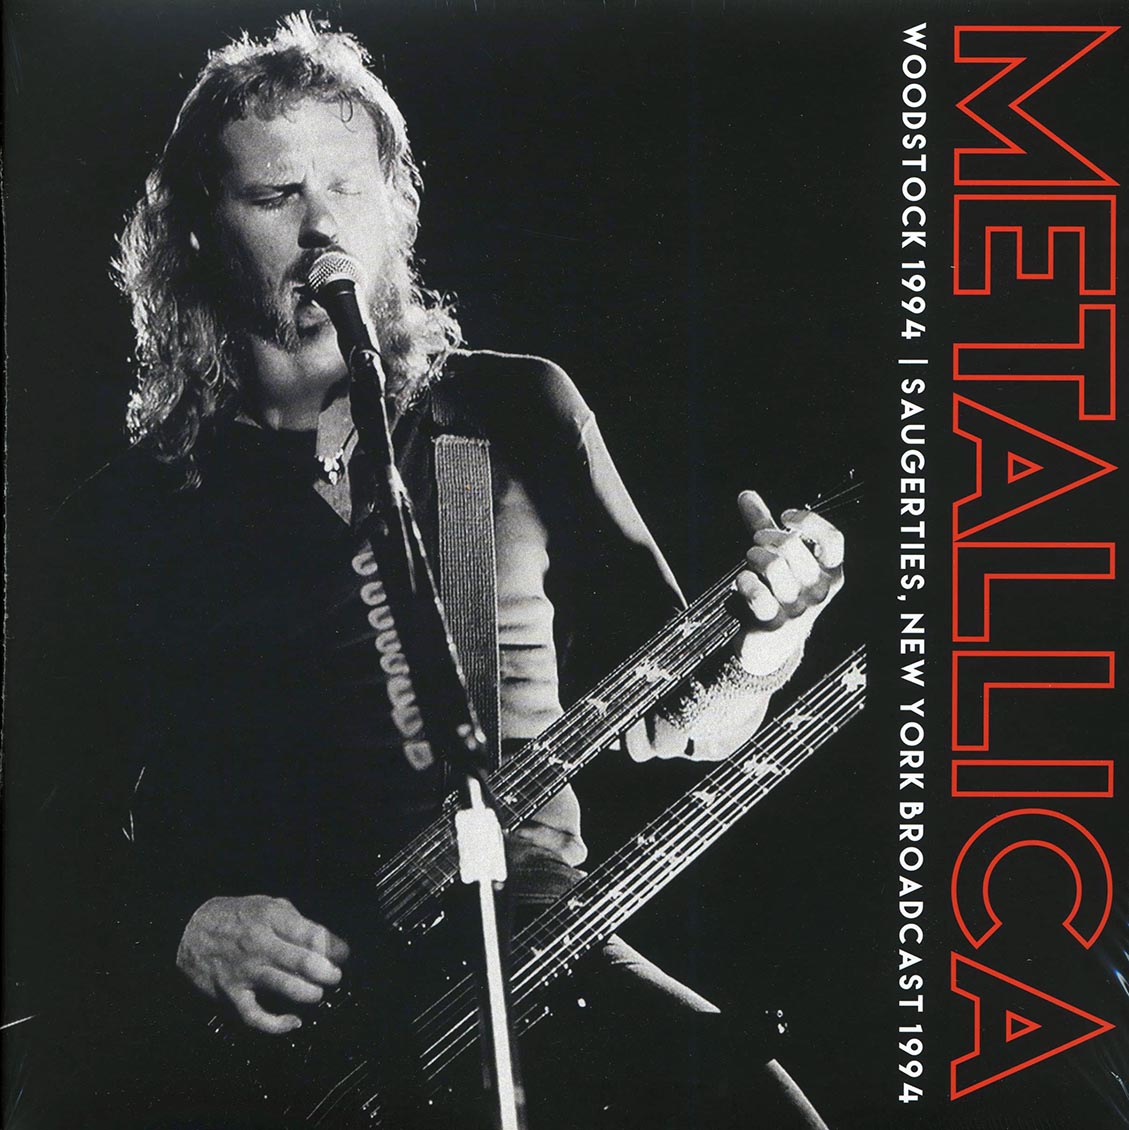 Metallica - Woodstock 1994: Saugerties, New York Broadcast (2xLP) - Vinyl LP